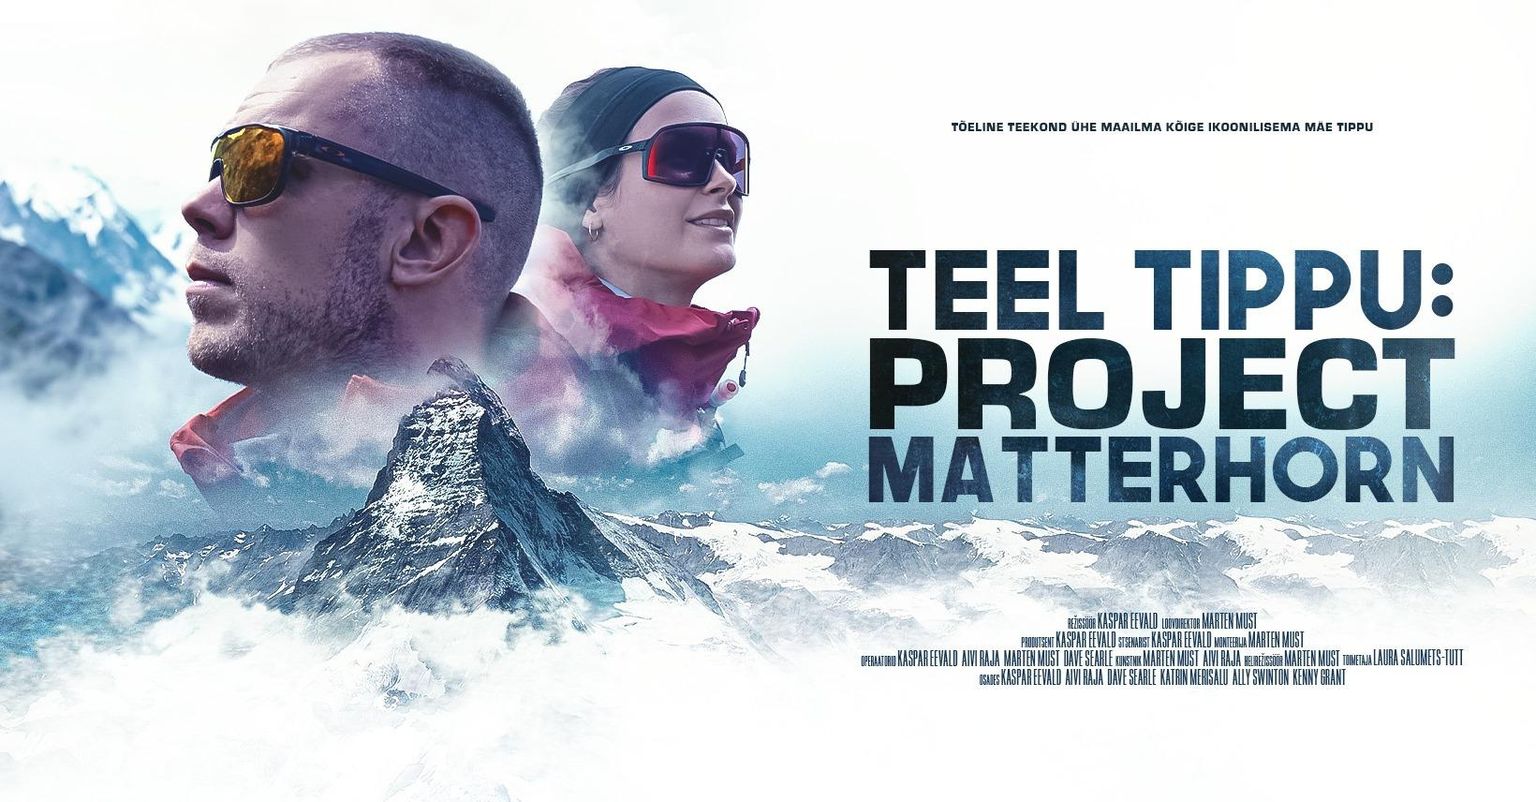 “Teel tippu: Project Matterhorn”.